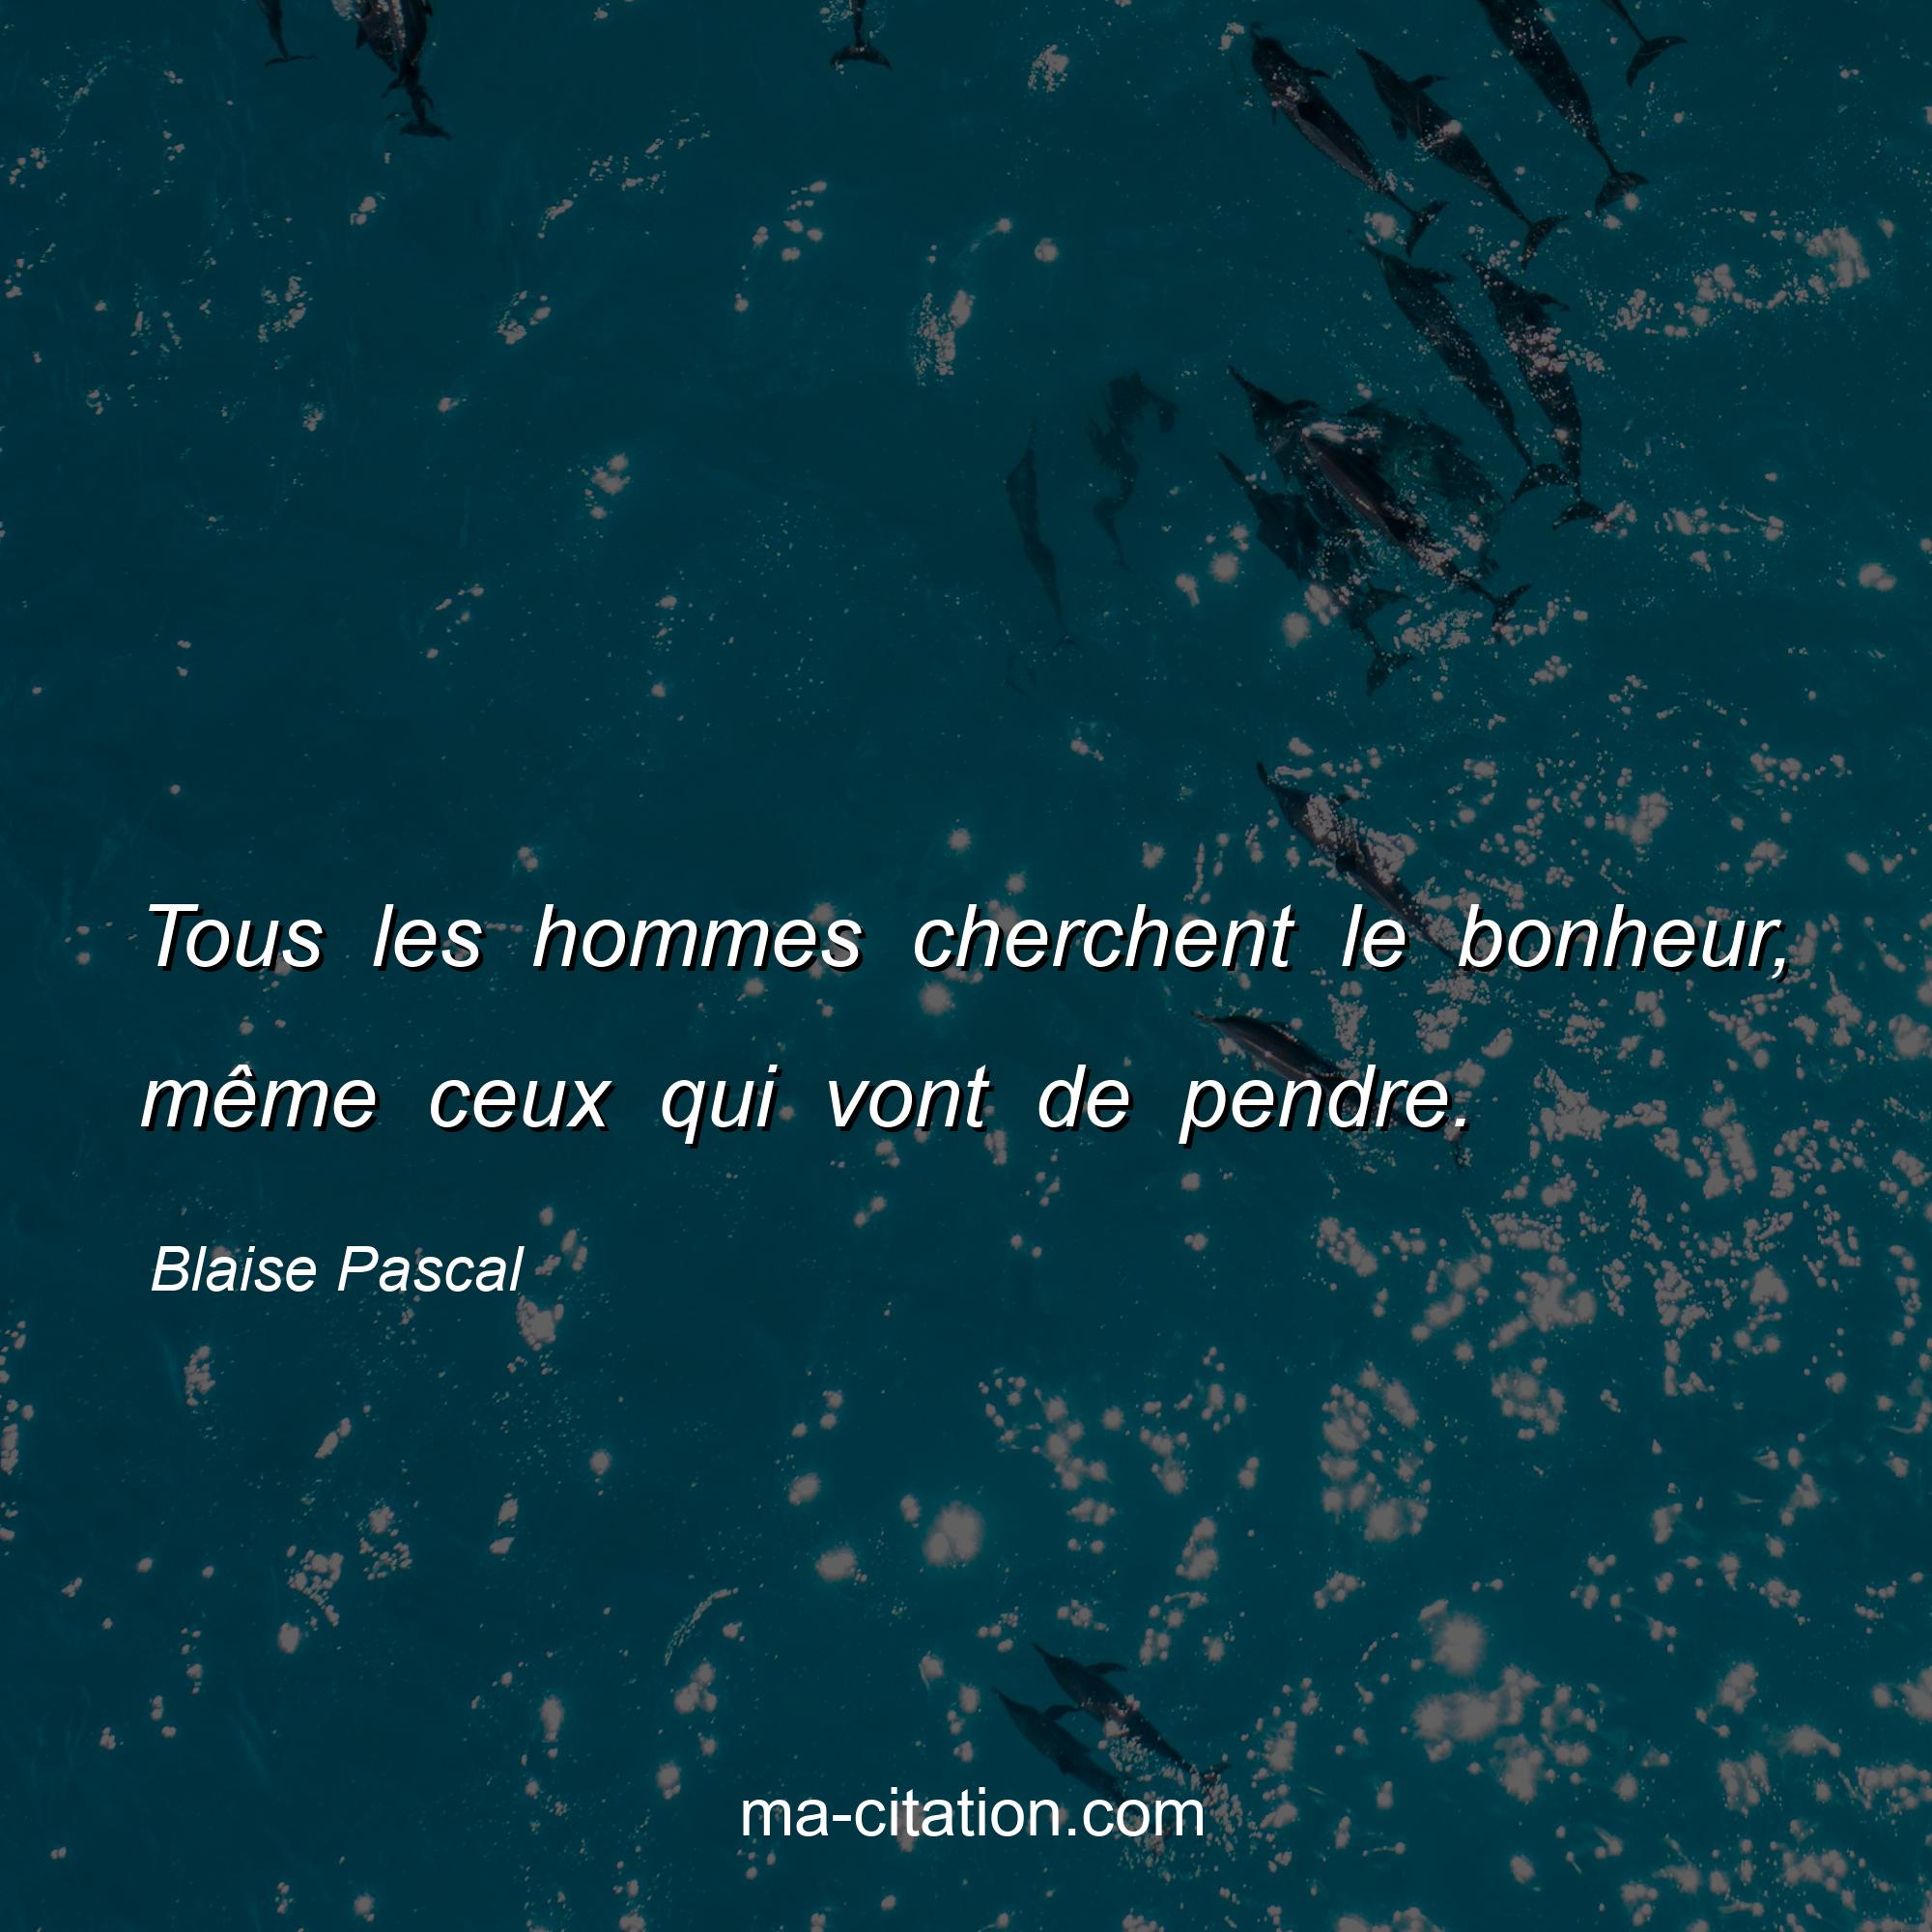 Blaise Pascal : Tous les hommes cherchent le bonheur, même ceux qui vont de pendre.